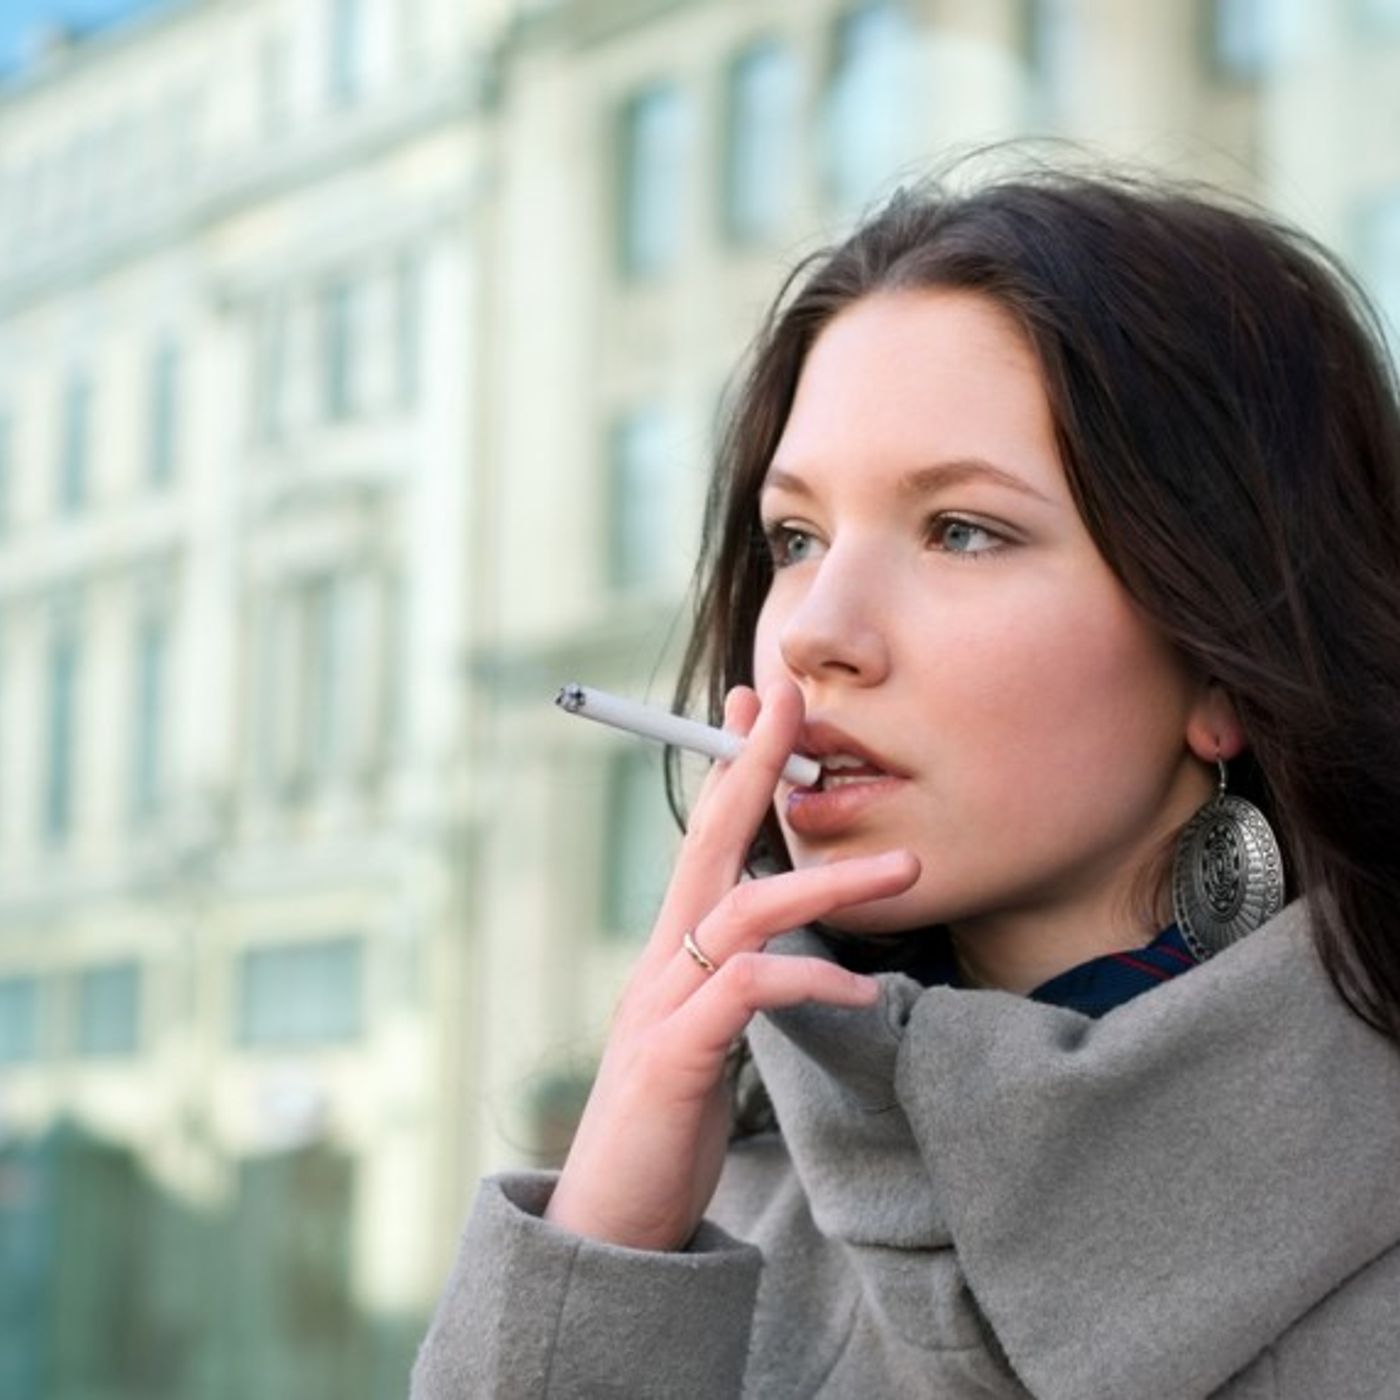 Курю вновь. Алиса Каштанова smoking. Курящая девушка. Девушка с сигаретой. Девушка курит на улице.